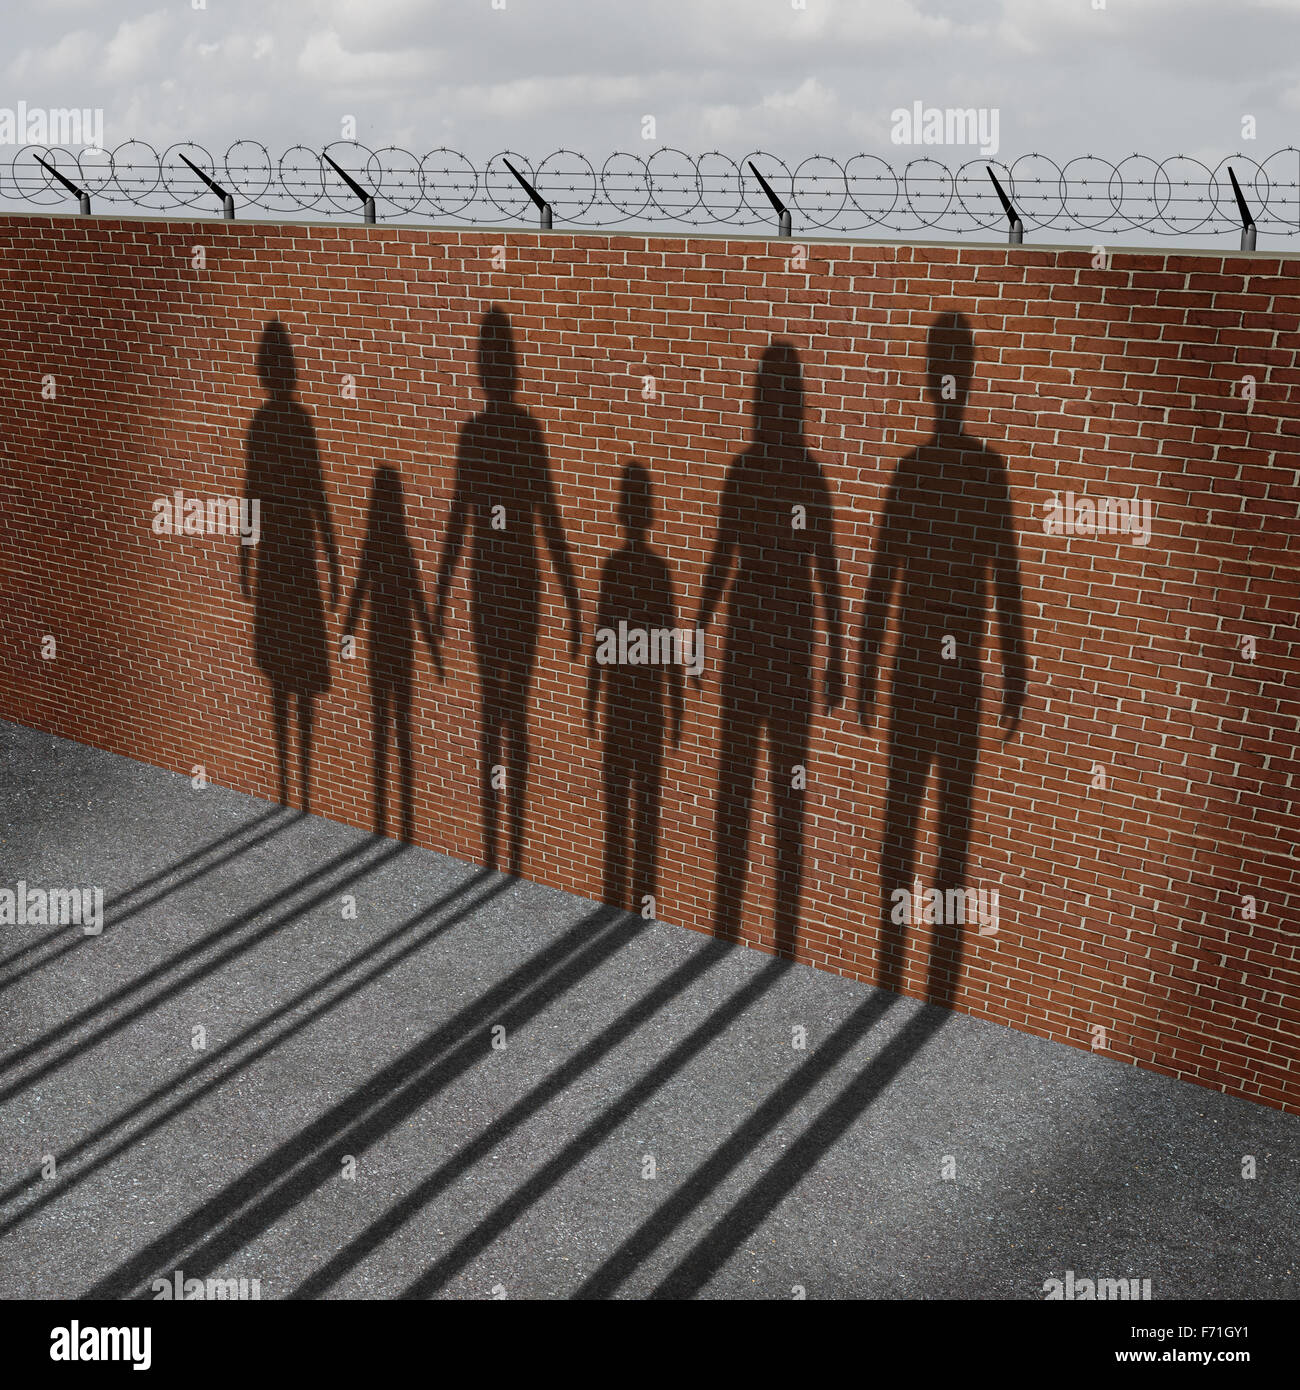 Einwanderung Menschen an der Grenze Wand als ein gesellschaftliches Problem über Flüchtlinge oder illegale Einwanderer Krise mit Schlagschatten einer Gruppe von Migration von Frauen Männer und Kinder. Stockfoto